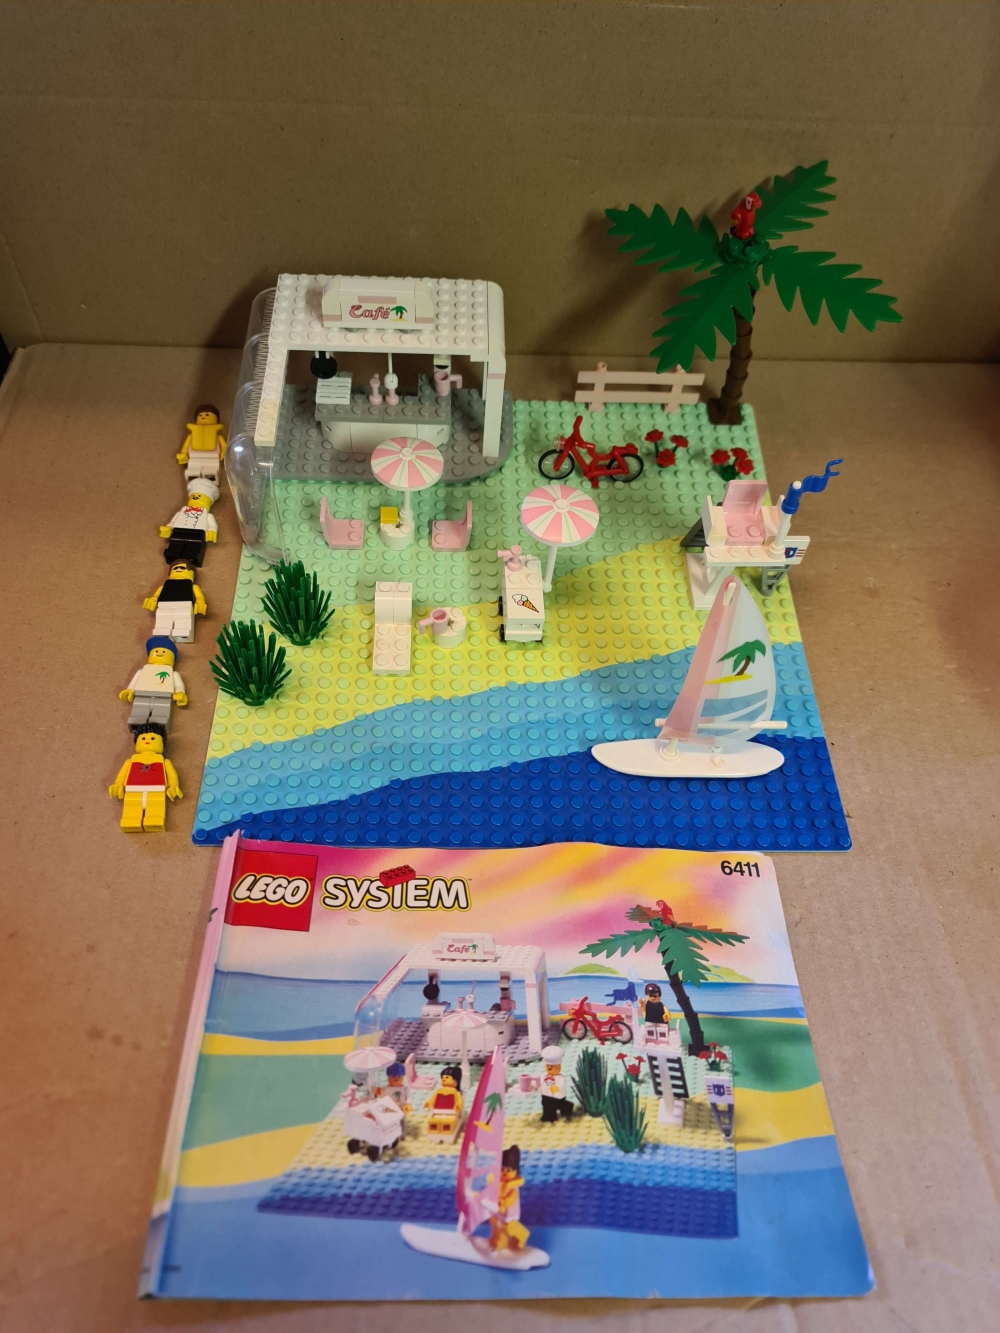 Sett 6411 fra Lego Paradisa serien
Fint sett. Komplett med manual.

Alle klistremerker på plass i god stand.

Noe antydning til misfarging på enkelte brikker. Se bilder.